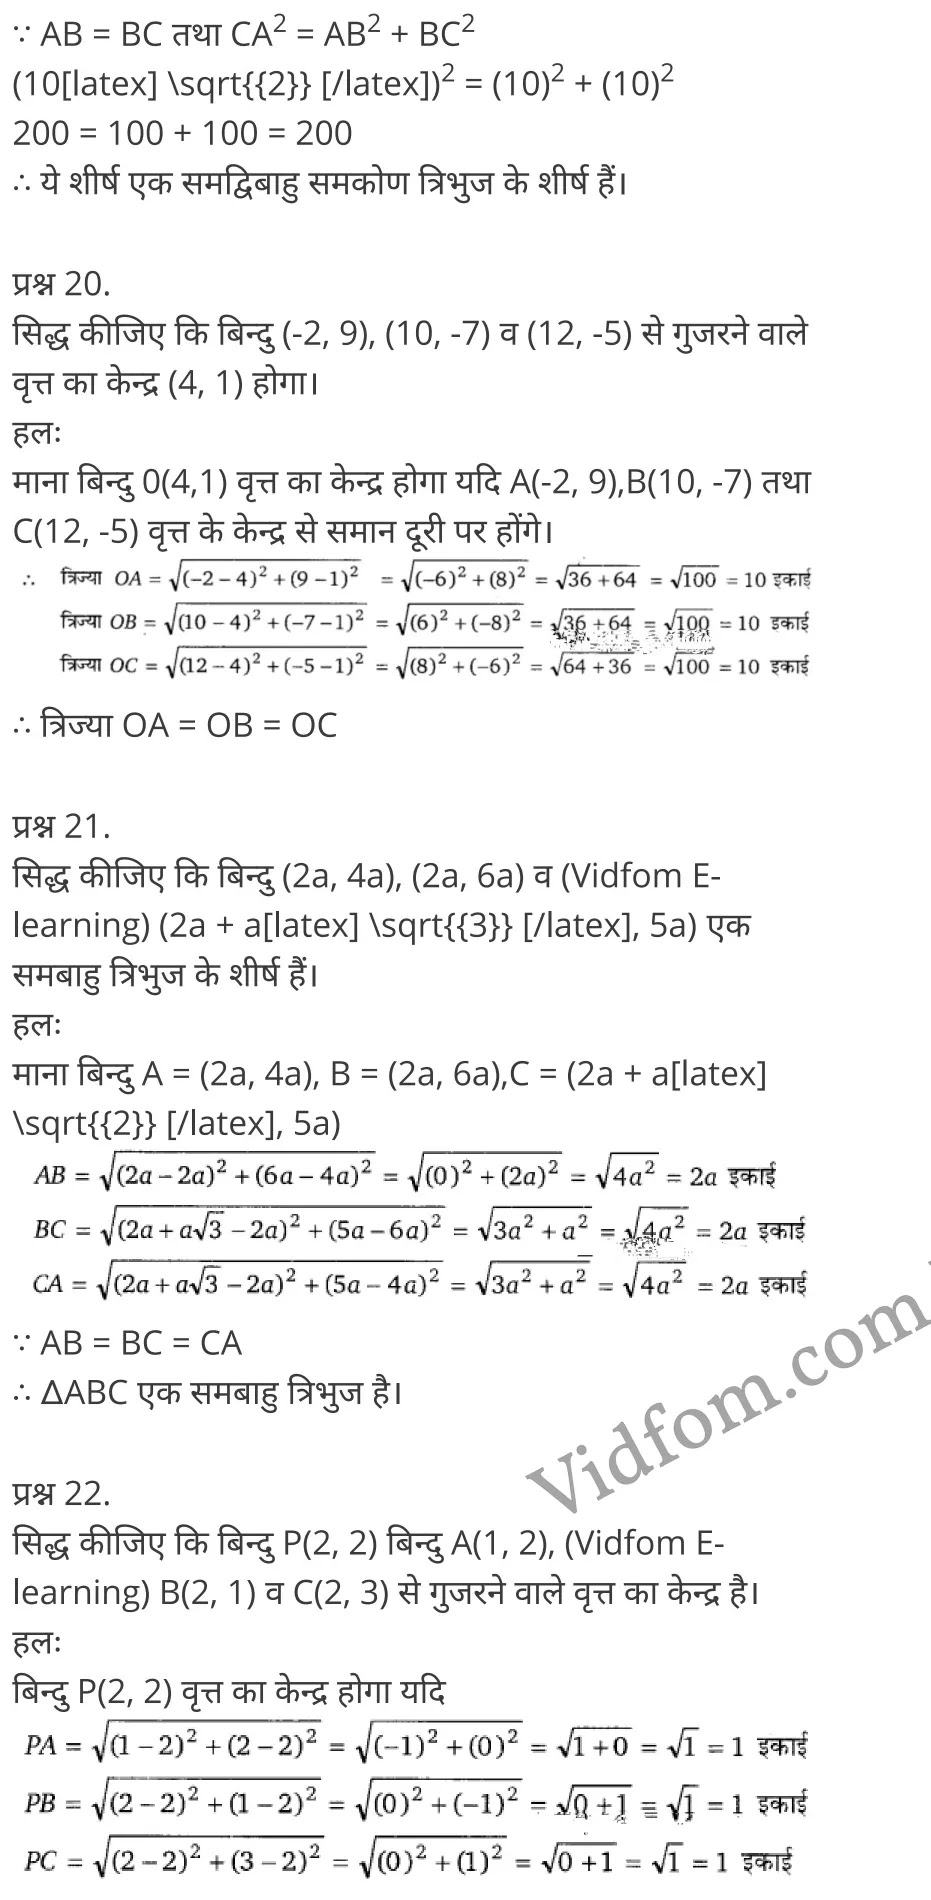 Chapter 6 Coordinate Geometry Ex 6.1 Chapter 6 Coordinate Geometry Ex 6.2 Chapter 6 Coordinate Geometry Ex 6.3 Chapter 6 Coordinate Geometry Ex 6.4 कक्षा 10 बालाजी गणित  के नोट्स  हिंदी में एनसीईआरटी समाधान,     class 10 Balaji Maths Chapter 6,   class 10 Balaji Maths Chapter 6 ncert solutions in Hindi,   class 10 Balaji Maths Chapter 6 notes in hindi,   class 10 Balaji Maths Chapter 6 question answer,   class 10 Balaji Maths Chapter 6 notes,   class 10 Balaji Maths Chapter 6 class 10 Balaji Maths Chapter 6 in  hindi,    class 10 Balaji Maths Chapter 6 important questions in  hindi,   class 10 Balaji Maths Chapter 6 notes in hindi,    class 10 Balaji Maths Chapter 6 test,   class 10 Balaji Maths Chapter 6 pdf,   class 10 Balaji Maths Chapter 6 notes pdf,   class 10 Balaji Maths Chapter 6 exercise solutions,   class 10 Balaji Maths Chapter 6 notes study rankers,   class 10 Balaji Maths Chapter 6 notes,    class 10 Balaji Maths Chapter 6  class 10  notes pdf,   class 10 Balaji Maths Chapter 6 class 10  notes  ncert,   class 10 Balaji Maths Chapter 6 class 10 pdf,   class 10 Balaji Maths Chapter 6  book,   class 10 Balaji Maths Chapter 6 quiz class 10  ,    10  th class 10 Balaji Maths Chapter 6  book up board,   up board 10  th class 10 Balaji Maths Chapter 6 notes,  class 10 Balaji Maths,   class 10 Balaji Maths ncert solutions in Hindi,   class 10 Balaji Maths notes in hindi,   class 10 Balaji Maths question answer,   class 10 Balaji Maths notes,  class 10 Balaji Maths class 10 Balaji Maths Chapter 6 in  hindi,    class 10 Balaji Maths important questions in  hindi,   class 10 Balaji Maths notes in hindi,    class 10 Balaji Maths test,  class 10 Balaji Maths class 10 Balaji Maths Chapter 6 pdf,   class 10 Balaji Maths notes pdf,   class 10 Balaji Maths exercise solutions,   class 10 Balaji Maths,  class 10 Balaji Maths notes study rankers,   class 10 Balaji Maths notes,  class 10 Balaji Maths notes,   class 10 Balaji Maths  class 10  notes pdf,   class 10 Balaji Maths class 10  notes  ncert,   class 10 Balaji Maths class 10 pdf,   class 10 Balaji Maths  book,  class 10 Balaji Maths quiz class 10  ,  10  th class 10 Balaji Maths    book up board,    up board 10  th class 10 Balaji Maths notes,      कक्षा 10 बालाजी गणित अध्याय 6 ,  कक्षा 10 बालाजी गणित, कक्षा 10 बालाजी गणित अध्याय 6  के नोट्स हिंदी में,  कक्षा 10 का हिंदी अध्याय 6 का प्रश्न उत्तर,  कक्षा 10 बालाजी गणित अध्याय 6  के नोट्स,  10 कक्षा बालाजी गणित  हिंदी में, कक्षा 10 बालाजी गणित अध्याय 6  हिंदी में,  कक्षा 10 बालाजी गणित अध्याय 6  महत्वपूर्ण प्रश्न हिंदी में, कक्षा 10   हिंदी के नोट्स  हिंदी में, बालाजी गणित हिंदी में  कक्षा 10 नोट्स pdf,    बालाजी गणित हिंदी में  कक्षा 10 नोट्स 2021 ncert,   बालाजी गणित हिंदी  कक्षा 10 pdf,   बालाजी गणित हिंदी में  पुस्तक,   बालाजी गणित हिंदी में की बुक,   बालाजी गणित हिंदी में  प्रश्नोत्तरी class 10 ,  बिहार बोर्ड 10  पुस्तक वीं हिंदी नोट्स,    बालाजी गणित कक्षा 10 नोट्स 2021 ncert,   बालाजी गणित  कक्षा 10 pdf,   बालाजी गणित  पुस्तक,   बालाजी गणित  प्रश्नोत्तरी class 10, कक्षा 10 बालाजी गणित,  कक्षा 10 बालाजी गणित  के नोट्स हिंदी में,  कक्षा 10 का हिंदी का प्रश्न उत्तर,  कक्षा 10 बालाजी गणित  के नोट्स,  10 कक्षा हिंदी 2021  हिंदी में, कक्षा 10 बालाजी गणित  हिंदी में,  कक्षा 10 बालाजी गणित  महत्वपूर्ण प्रश्न हिंदी में, कक्षा 10 बालाजी गणित  नोट्स  हिंदी में,